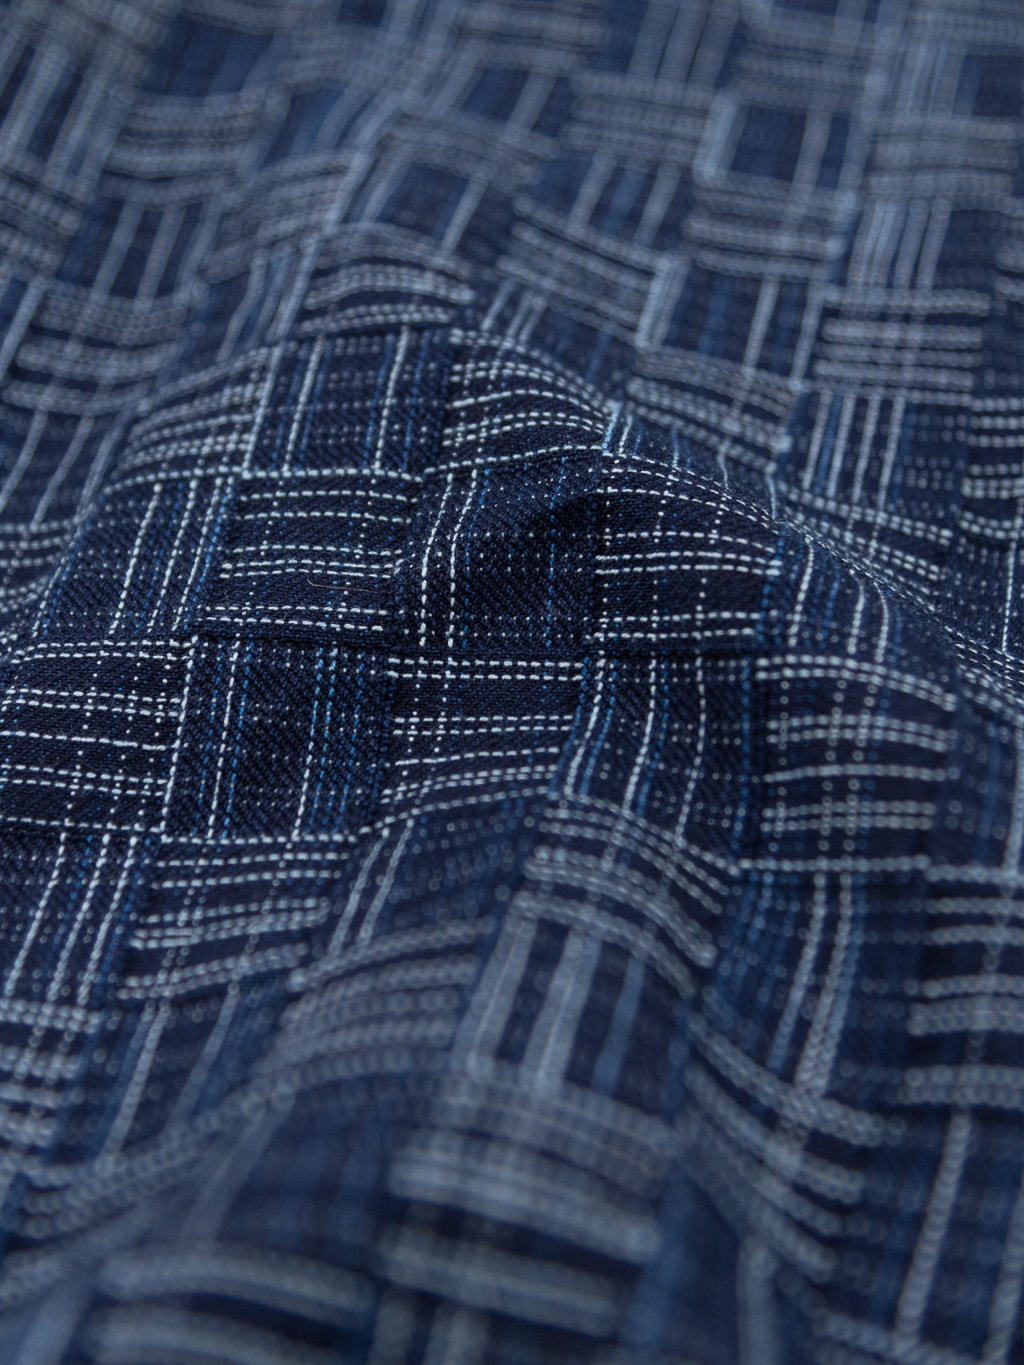 Samurai natural Indigo kasuri Work Shirt cotton fabric